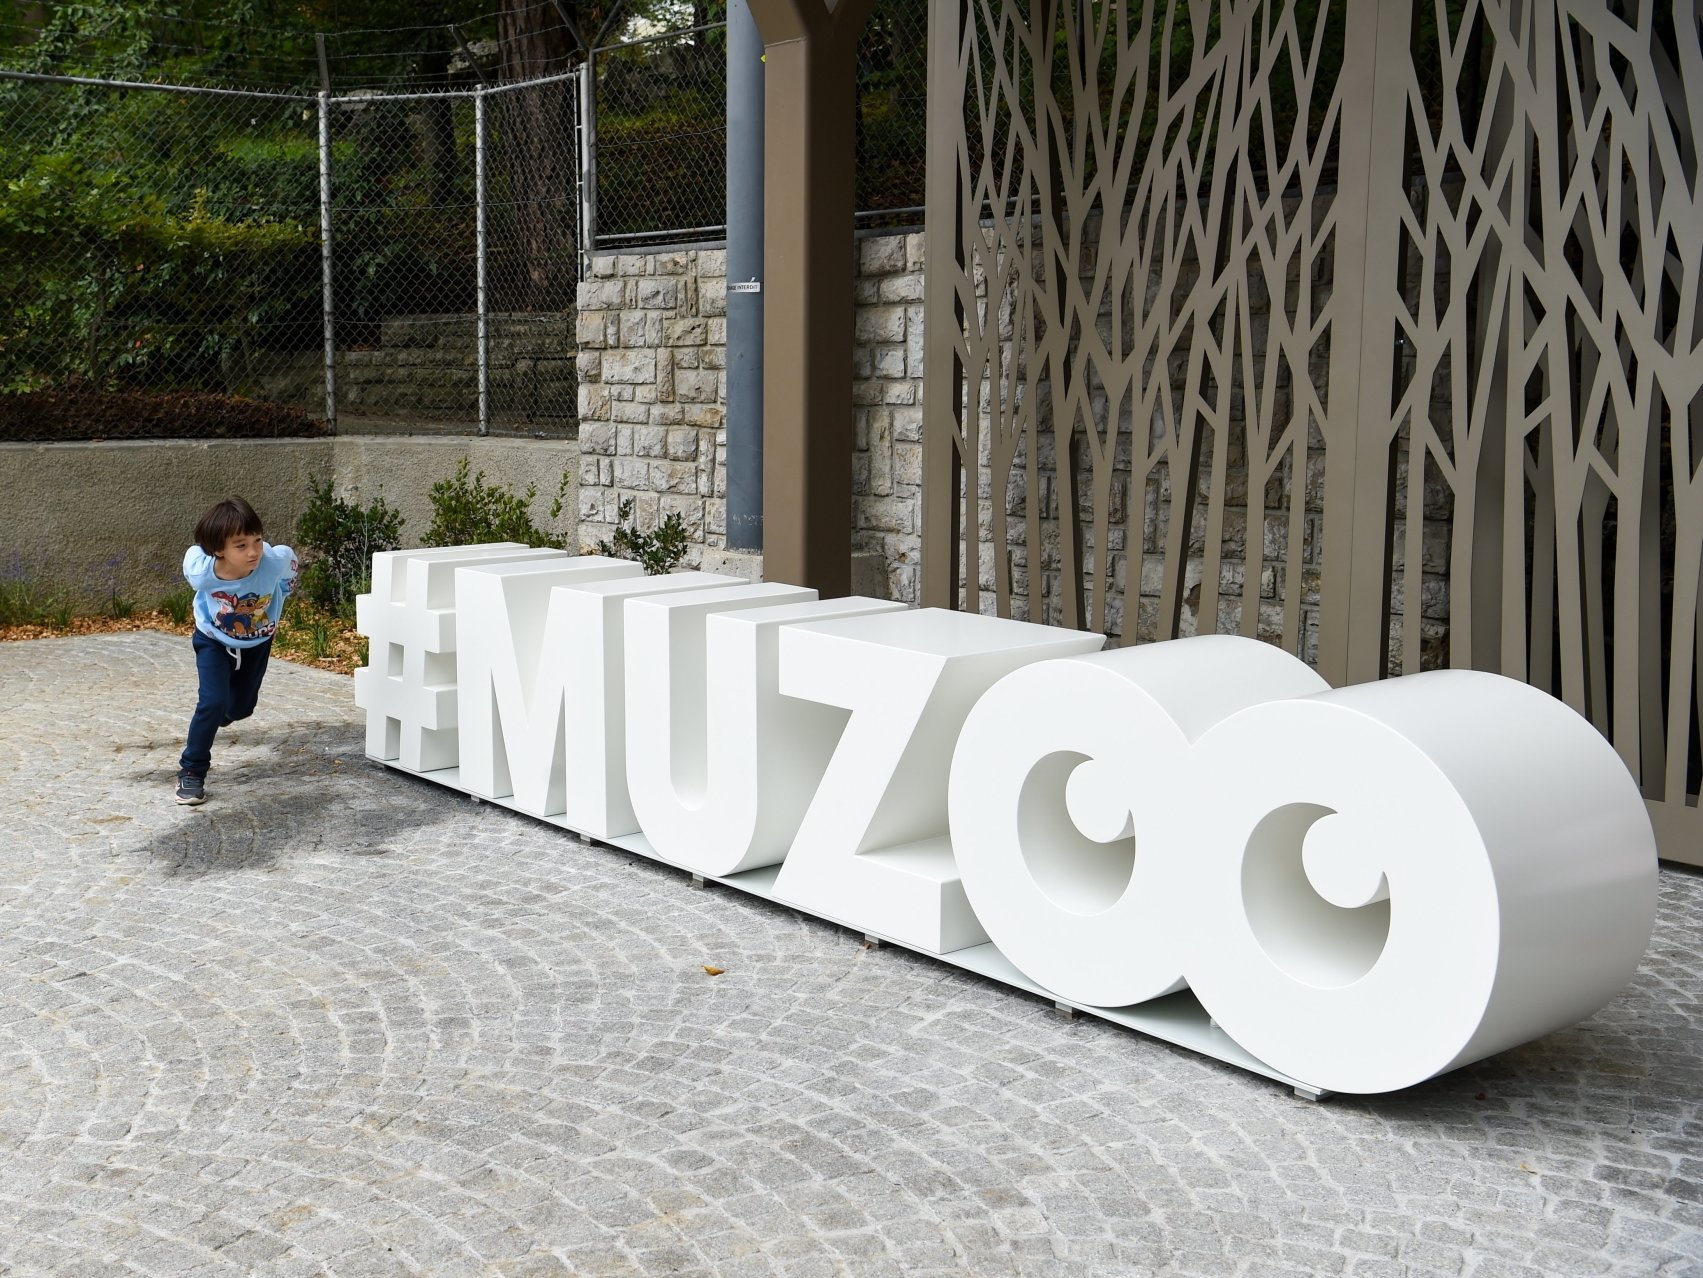 Muzoo sera officiellement inauguré ce samedi 17 décembre.